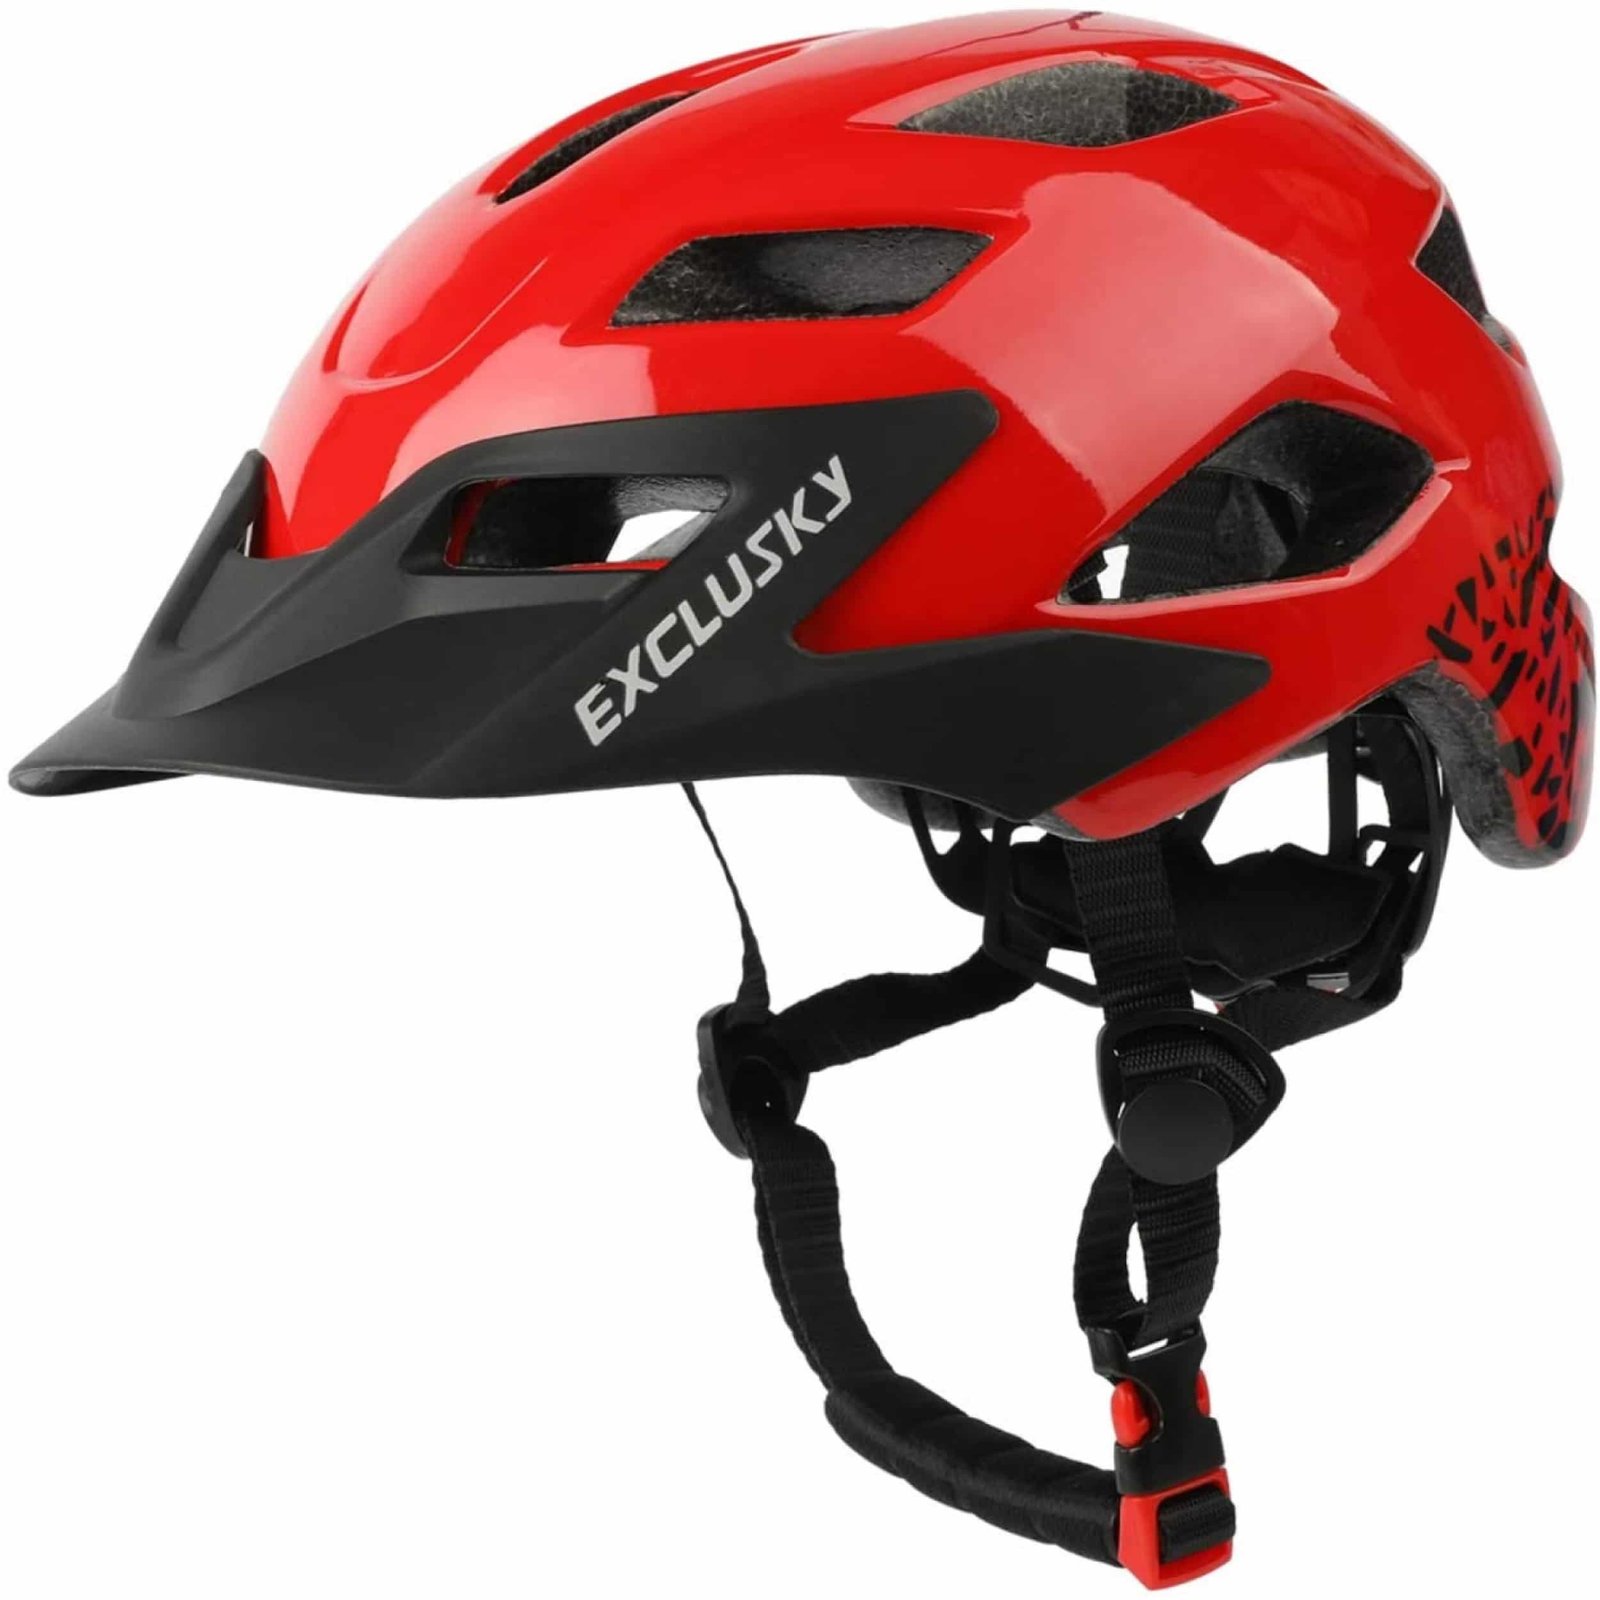 7. Exclusky Kids Bike Helmet